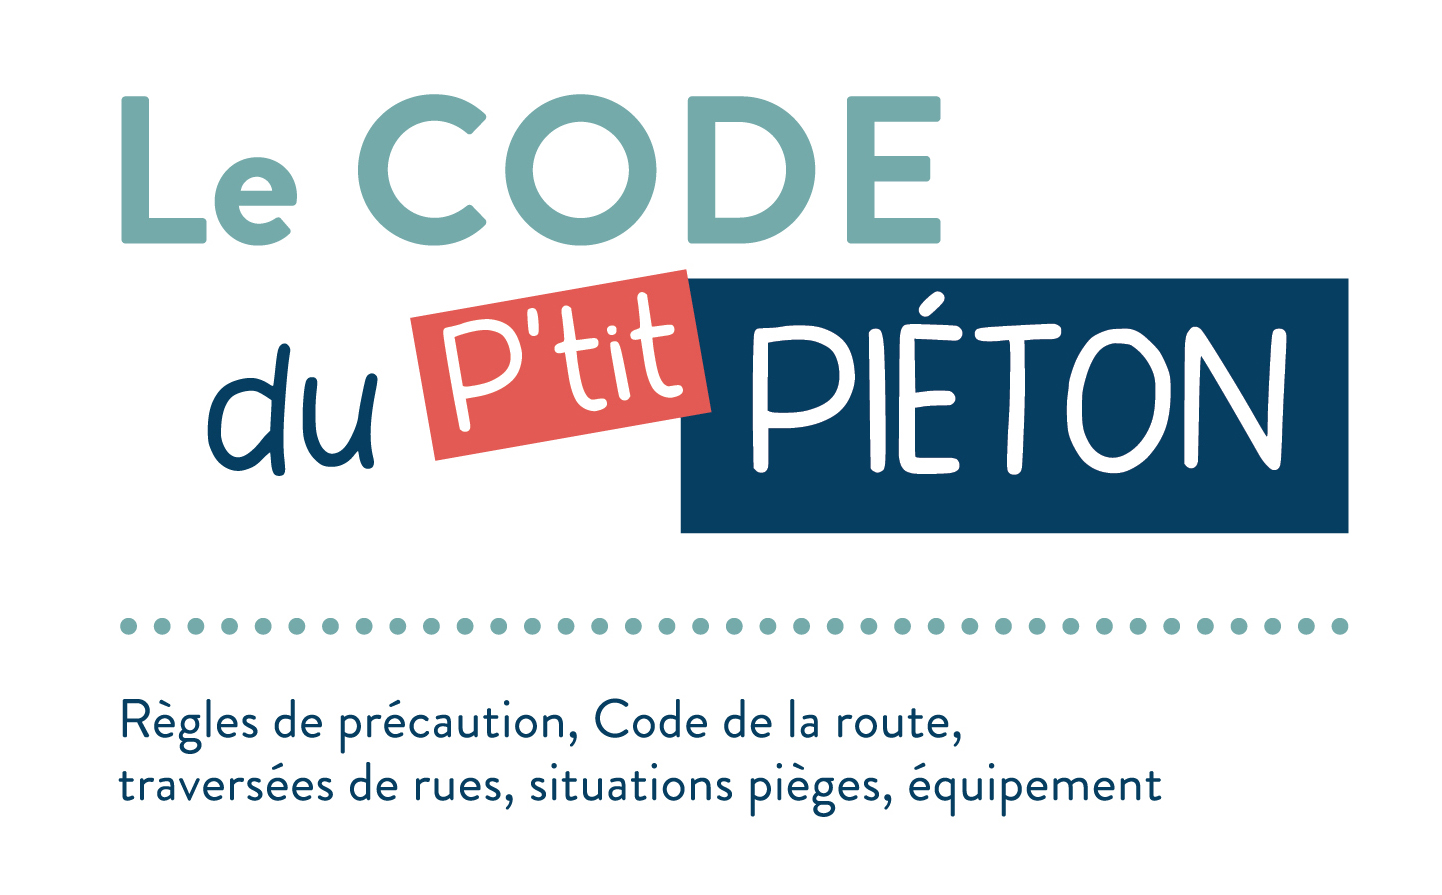 Le code du p'tit piéton cover